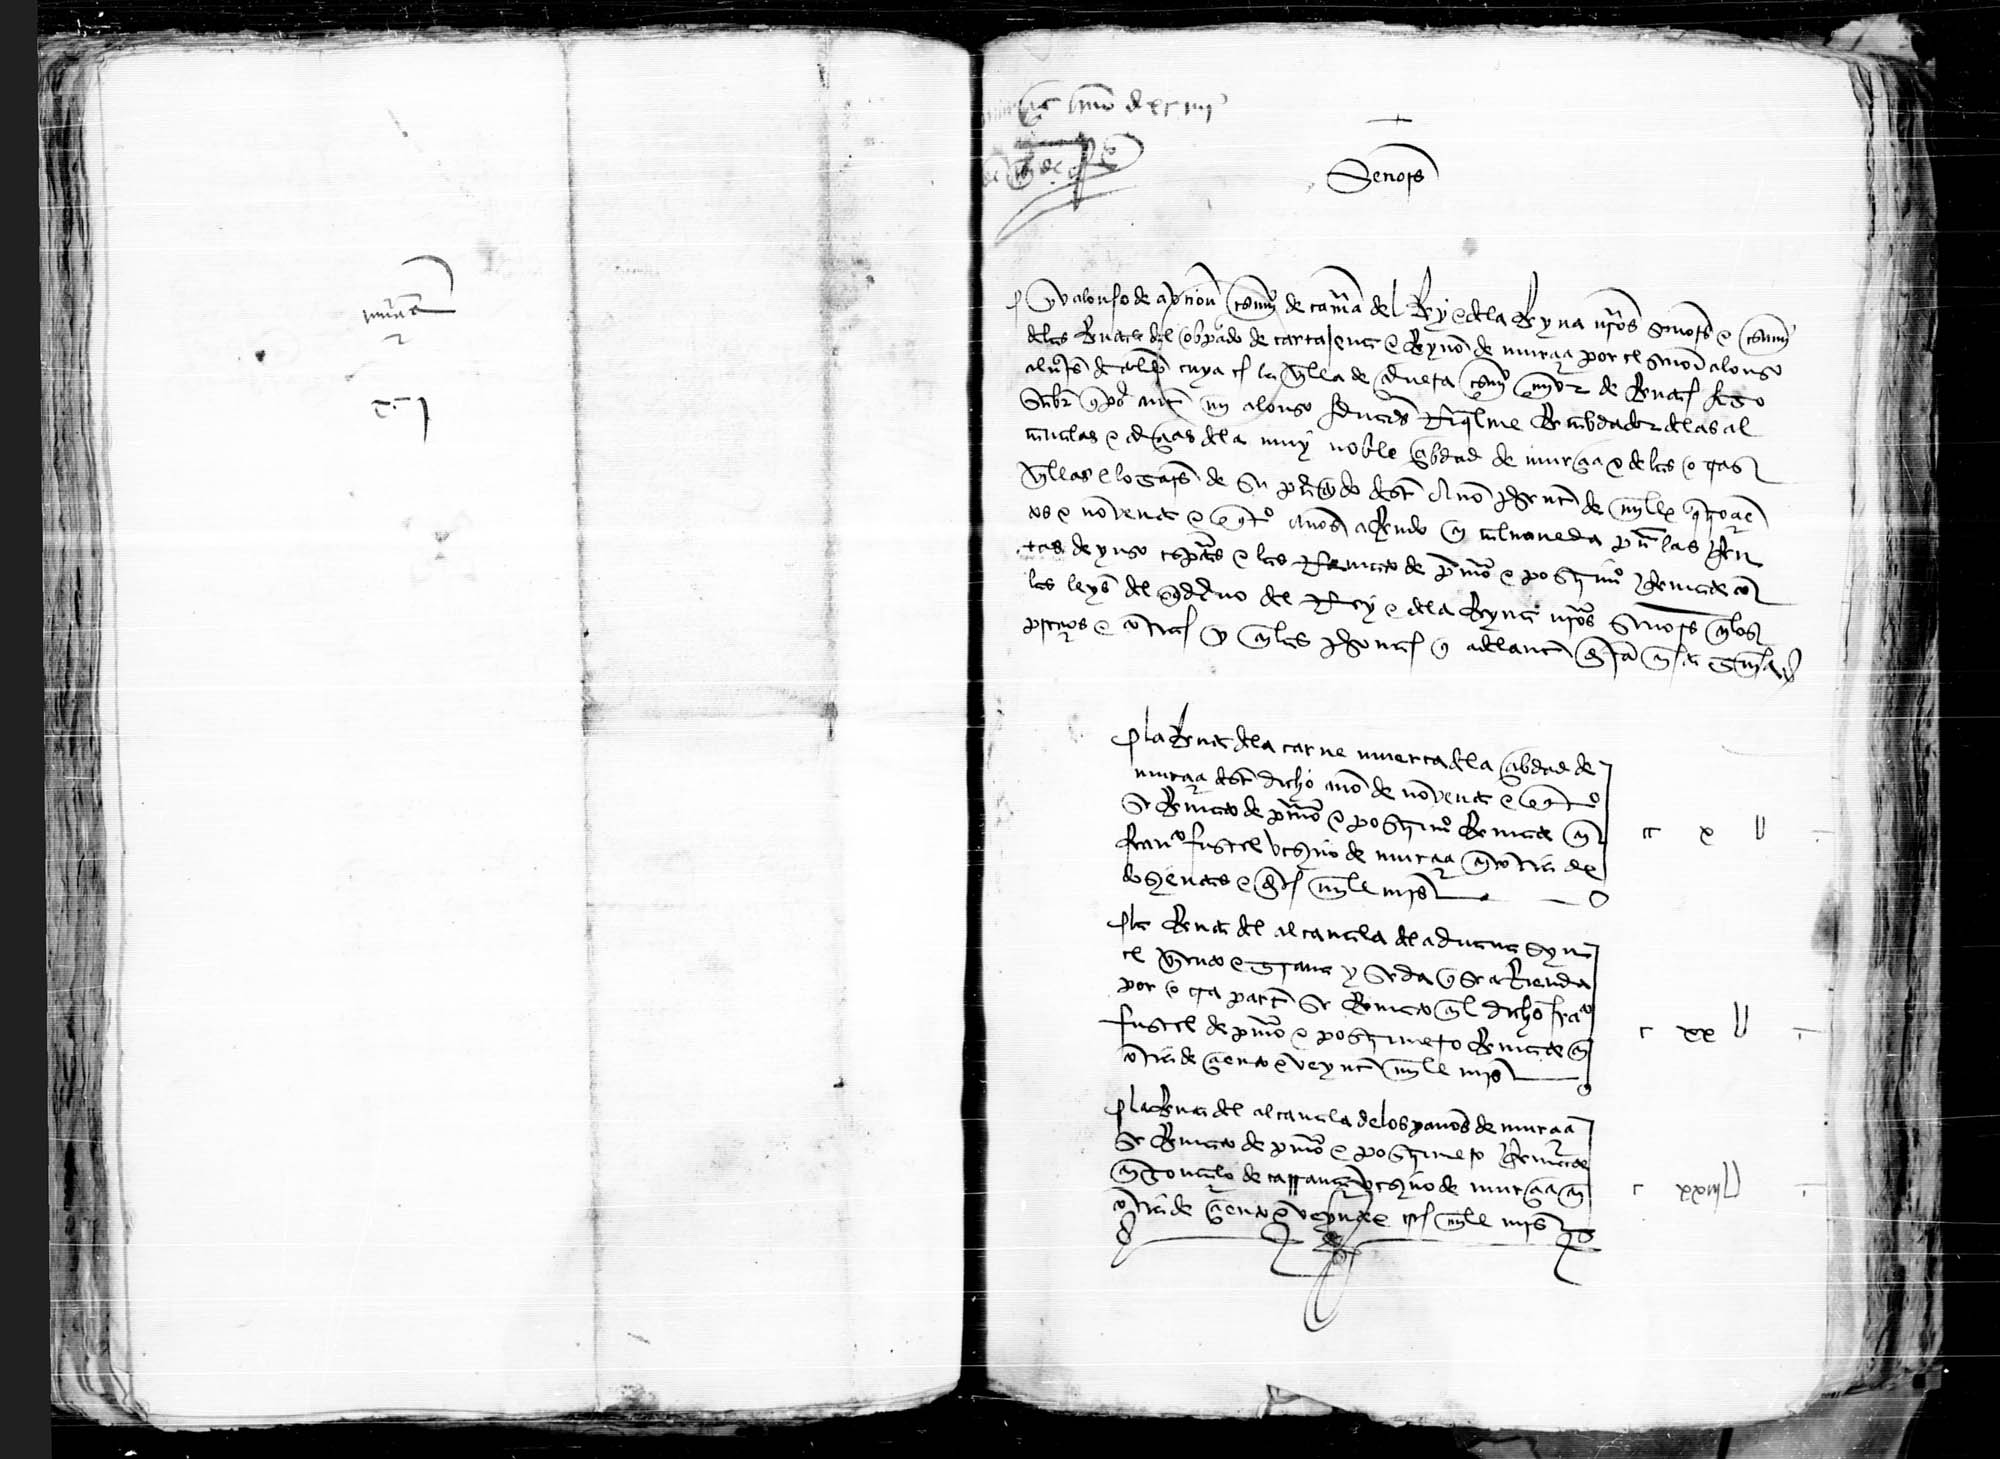 Comunicación que presenta Alfonso de Auñón, jurado de Murcia y escribano de rentas del Reino de Murcia y Obispado de Cartagena, a los contadores mayores del valor y los arrendadores al por menor de las rentas reales de ese distrito en 1494.